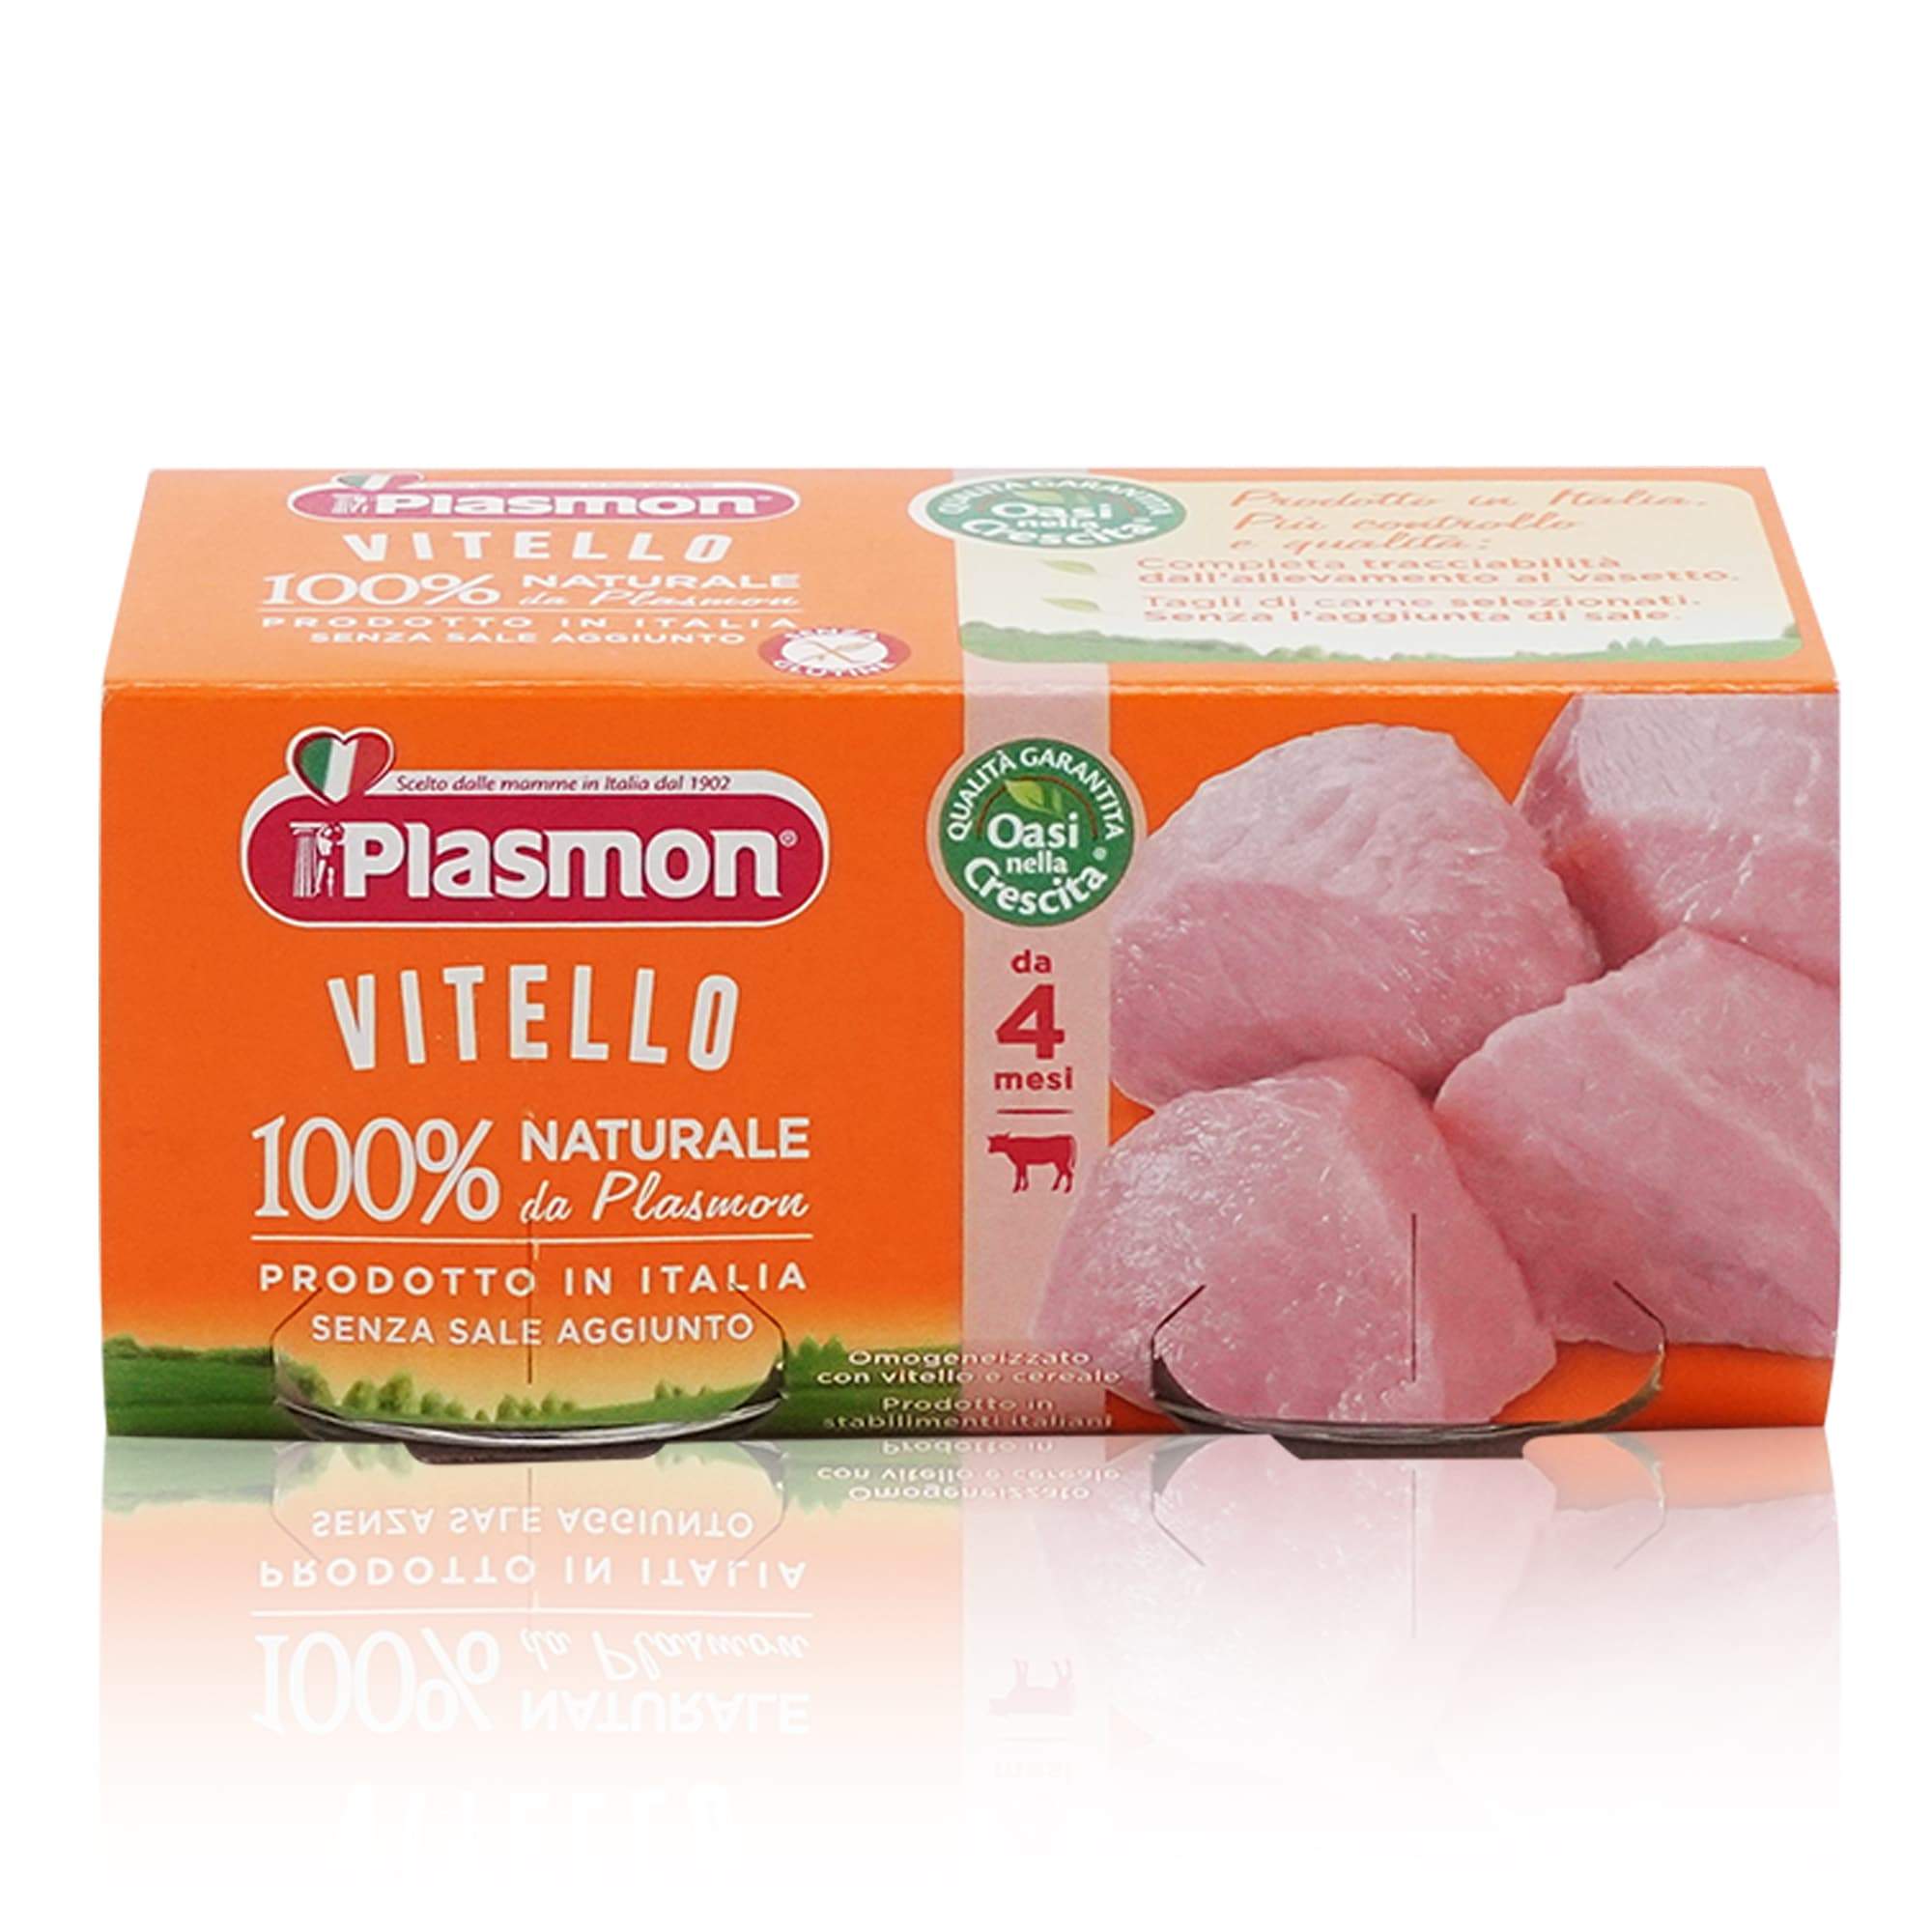 PLASMON Omogeneizzato Vitello – Fleischgläschen Kalbfleisch ab dem 6. Monat - 0,160kg - italienisch-einkaufen.de